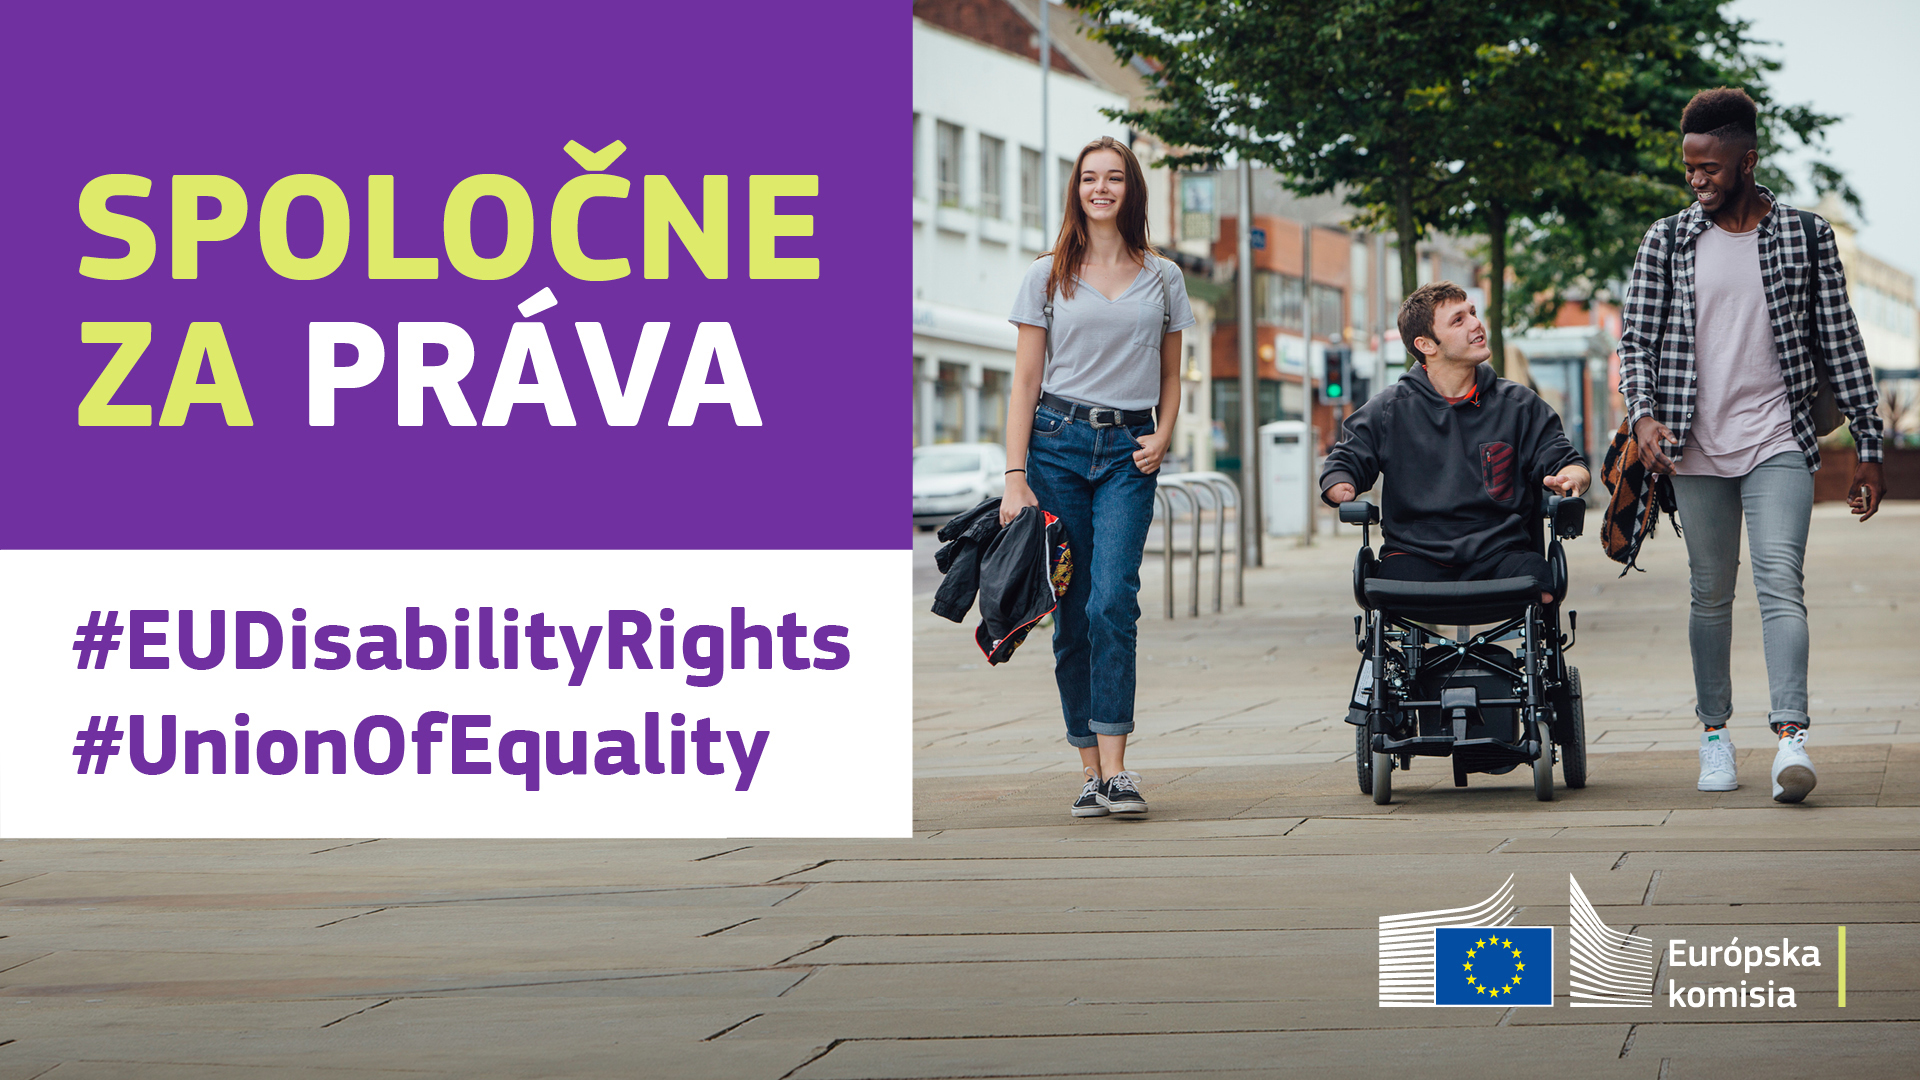 Traja mladí ľudia sa prechádzajú po meste. Jeden z nich je na invalidnom vozíku. Text znie: spoločne za práva, #EUDisabilityRights, #UnionOfEquality.